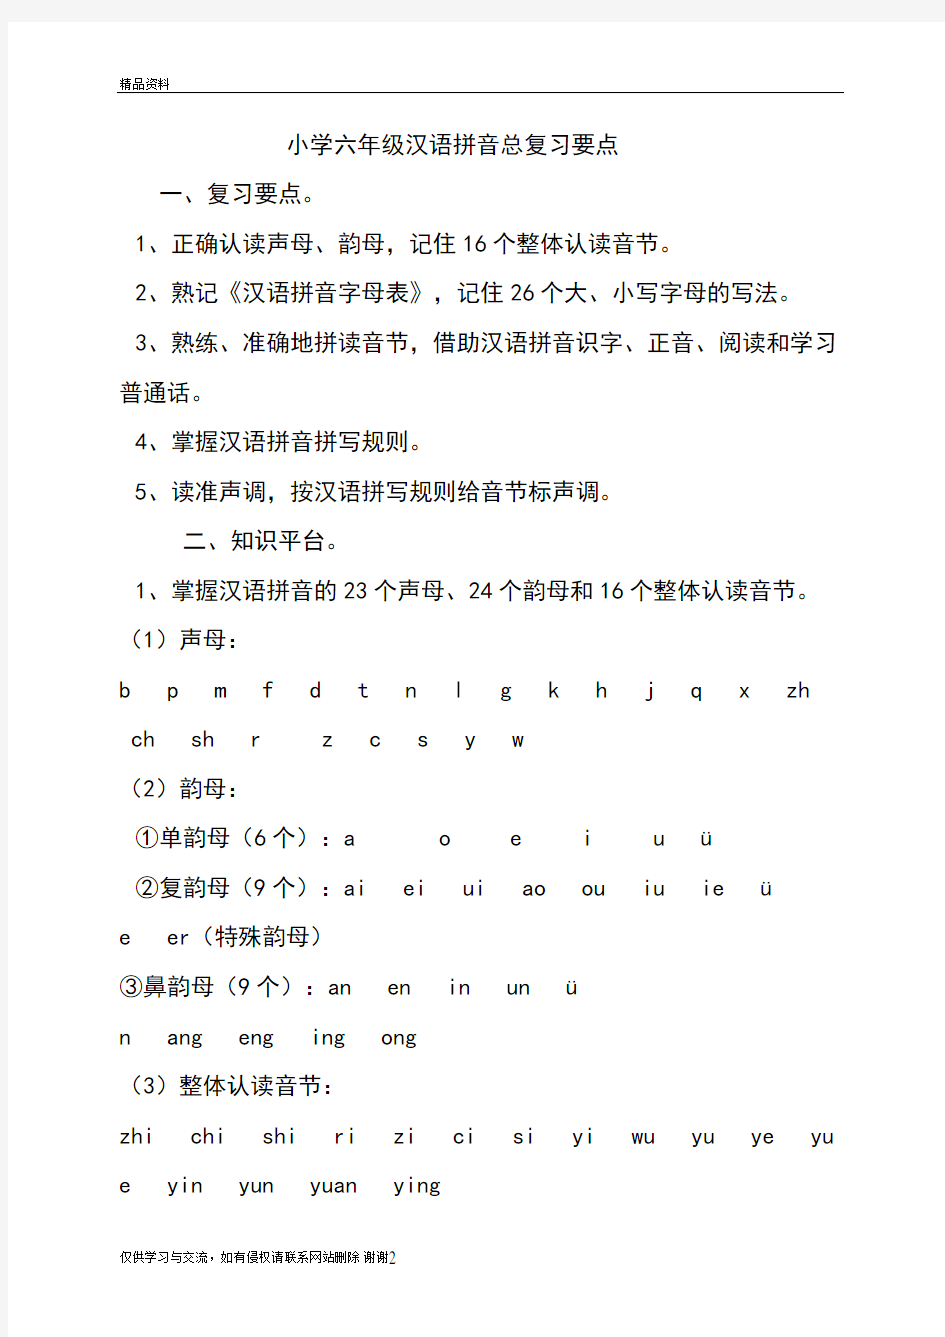 小学六年级汉语拼音总复习要点学习资料